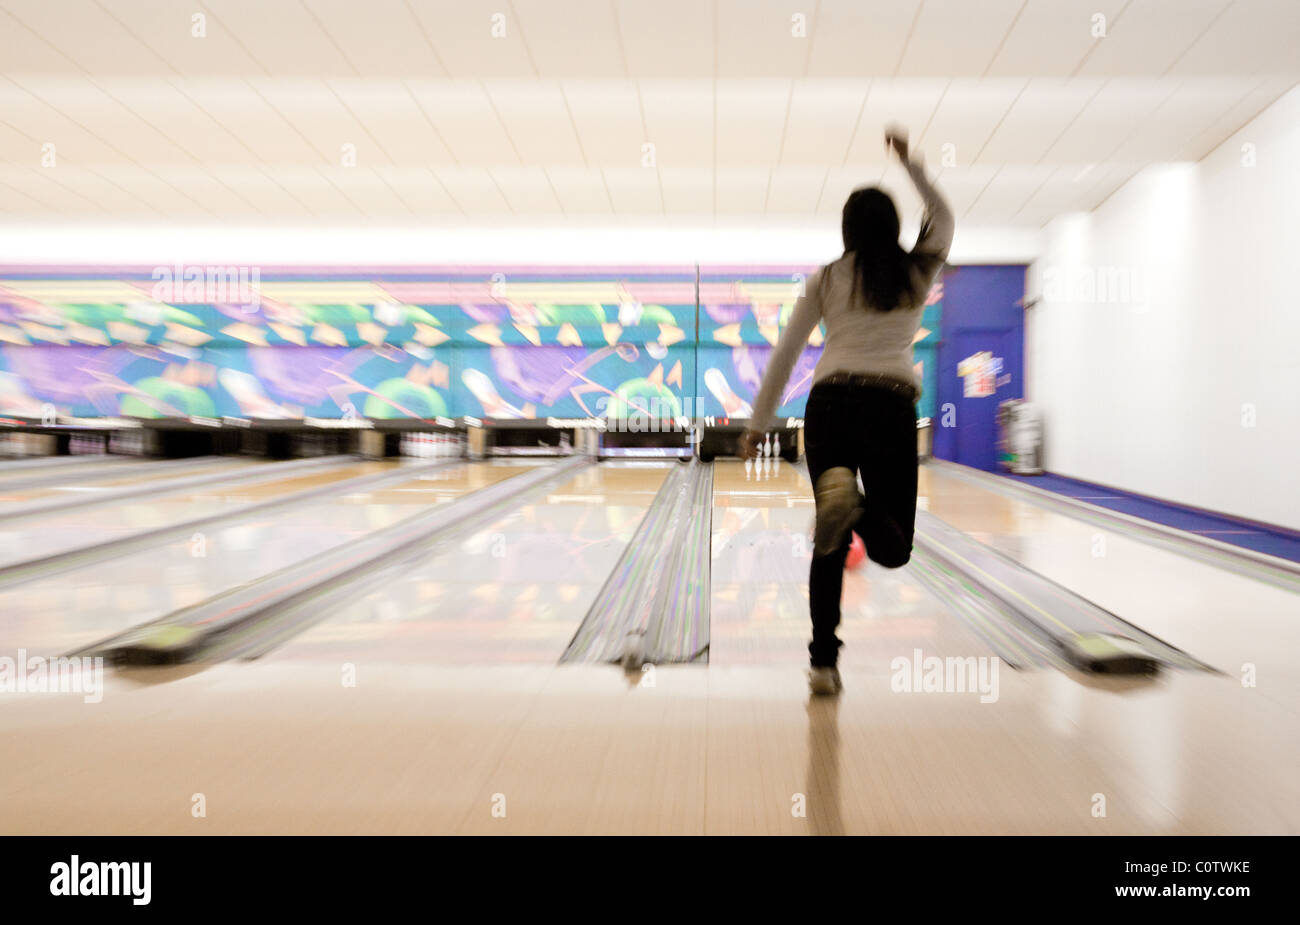 Une jeune femme d'Adolescent de l'adolescence à dix quilles au 'Strikes' bowling, Ely, UK Banque D'Images